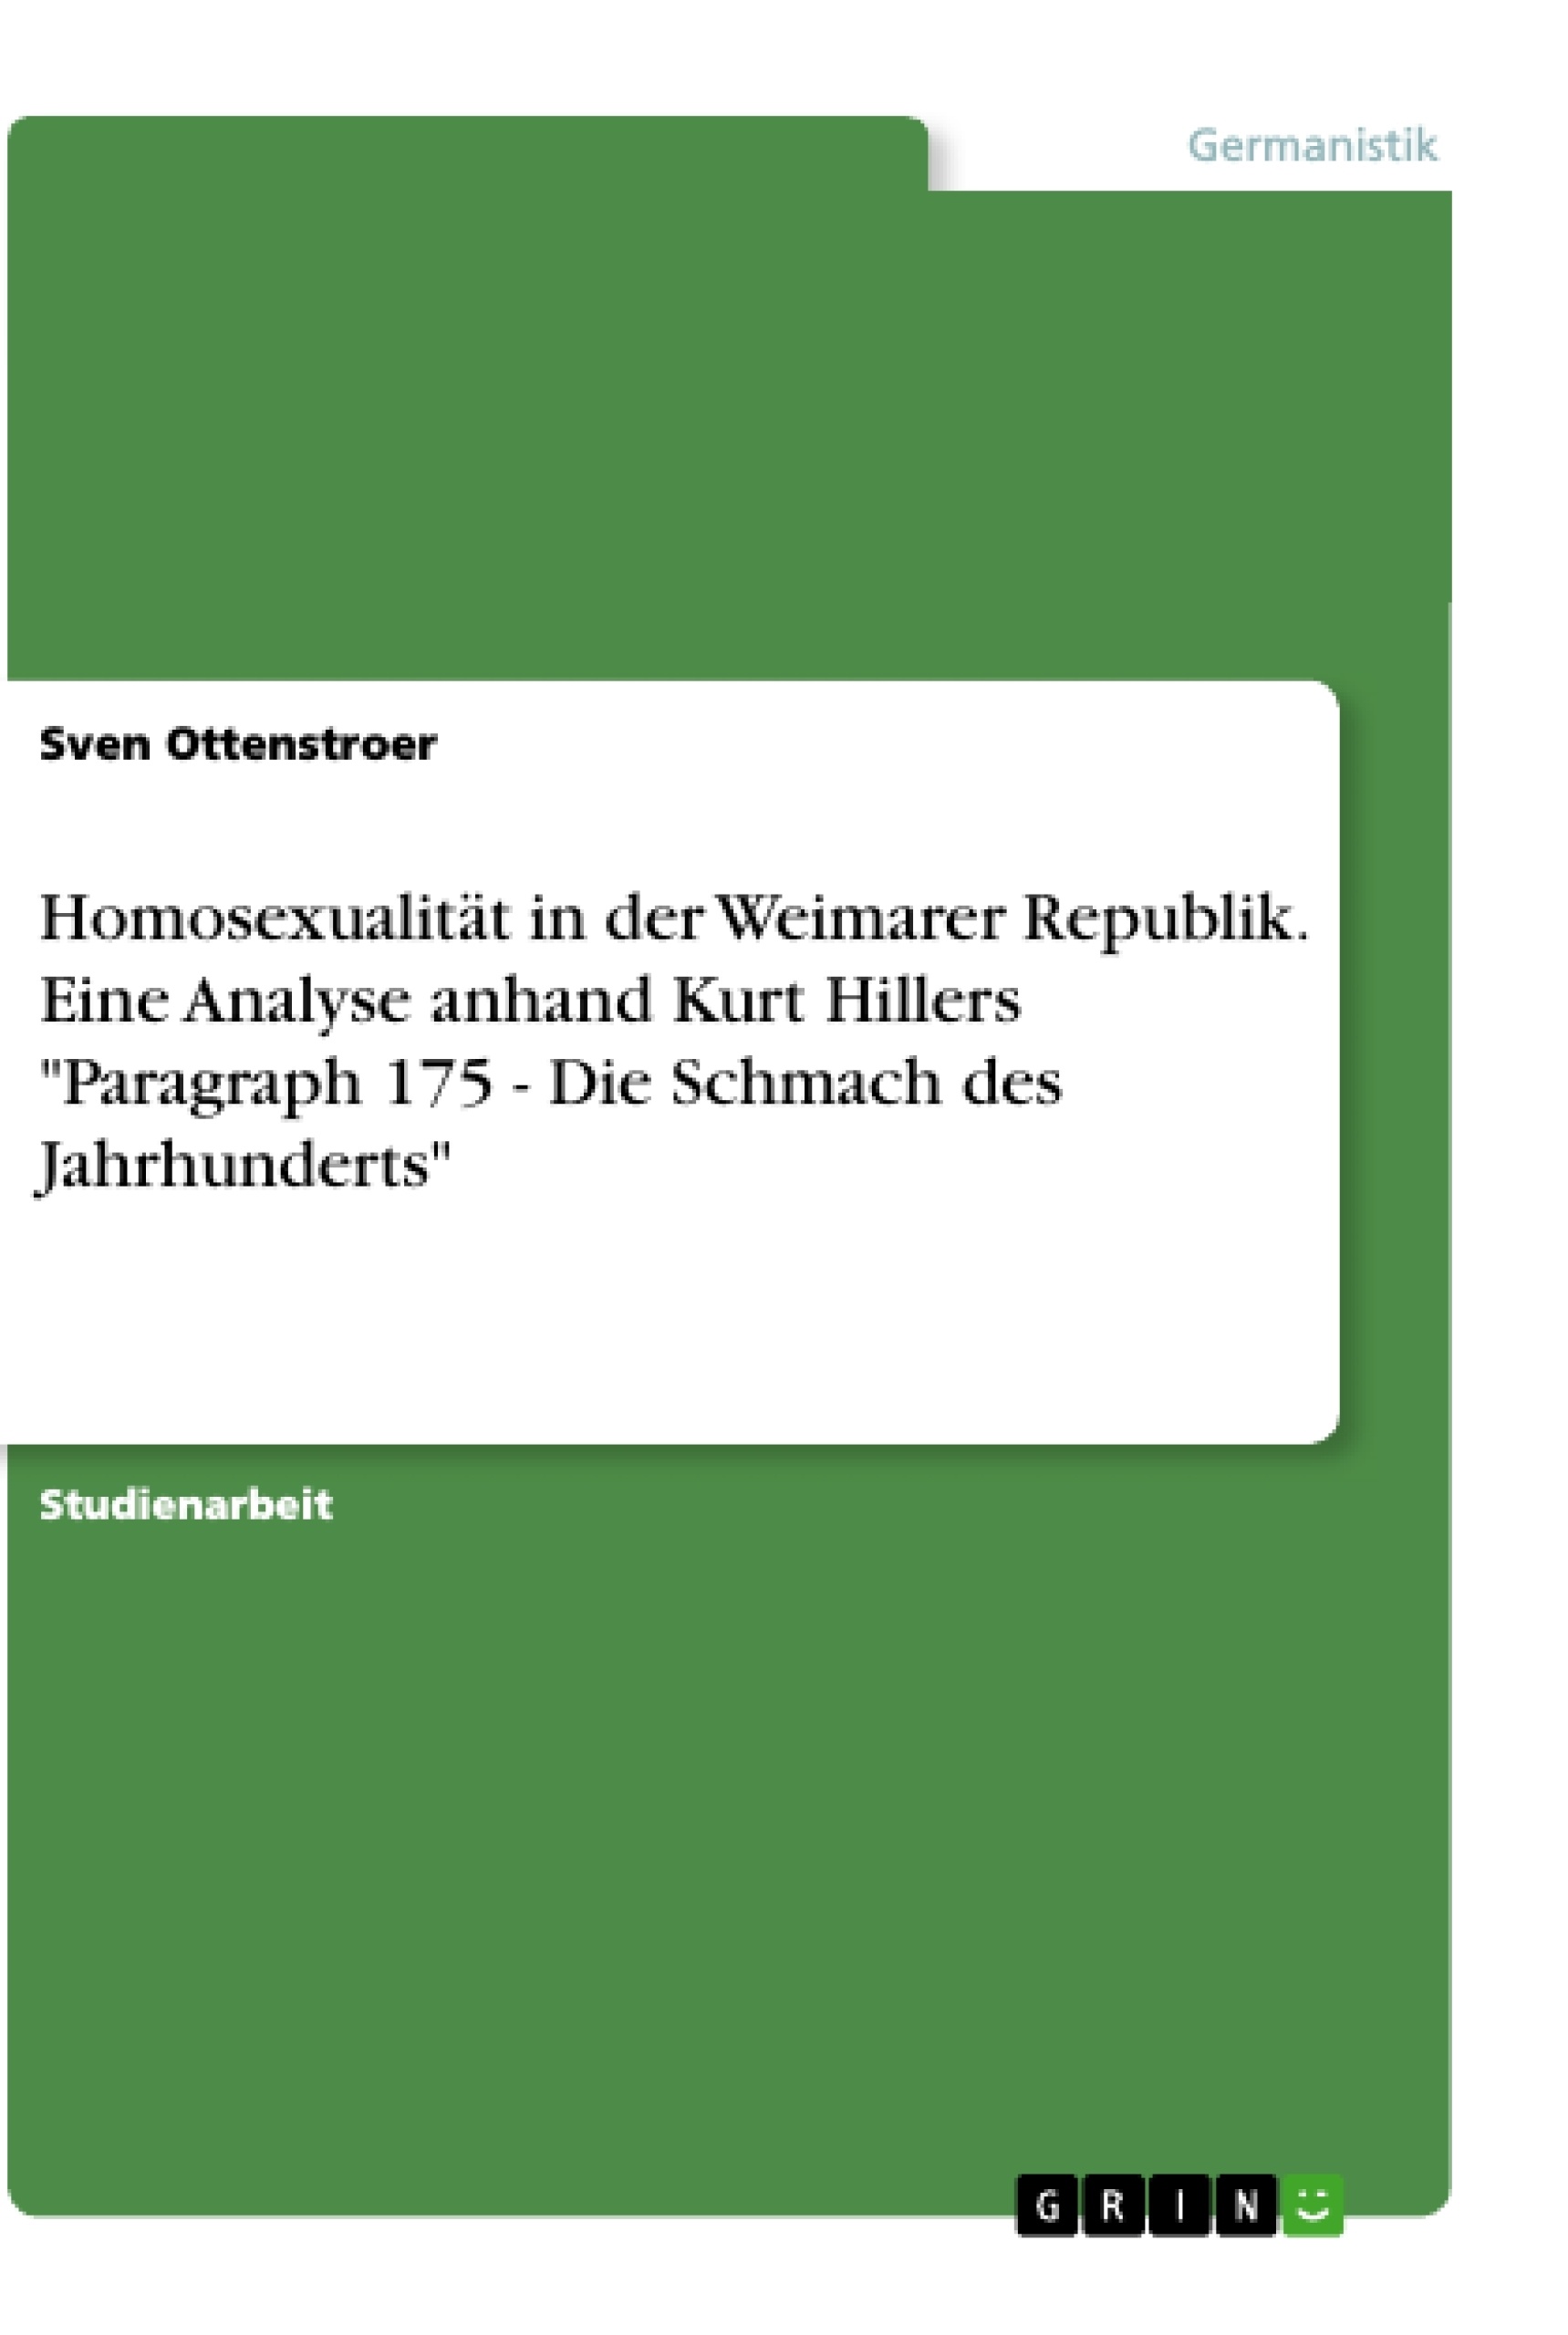 Título: Homosexualität in der Weimarer Republik. Eine Analyse anhand Kurt Hillers "Paragraph 175 - Die Schmach des Jahrhunderts"